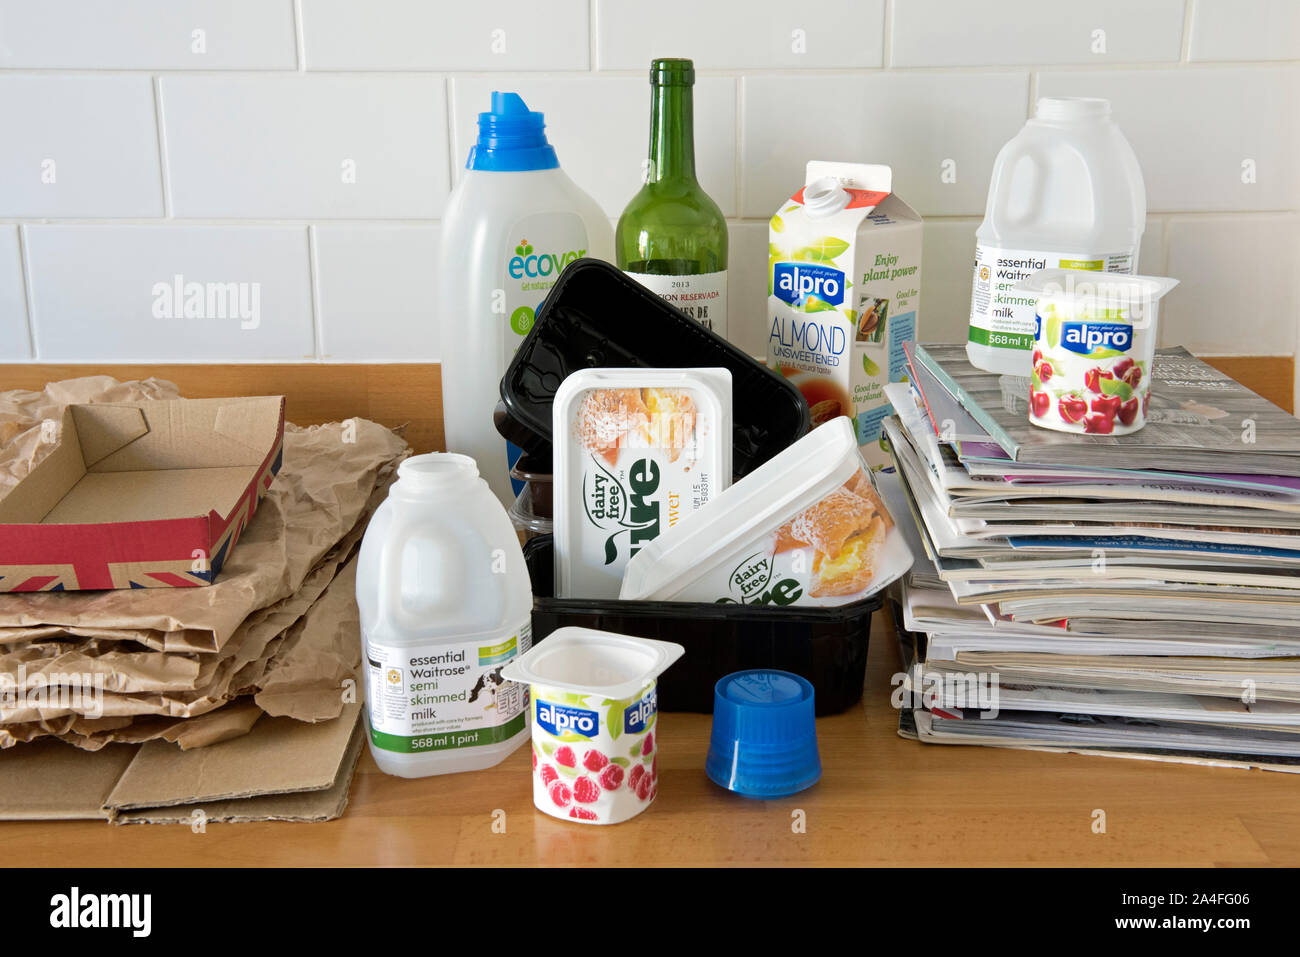 Articoli per la casa sul piano cucina pronti per il riciclaggio inclusa la plastica, carta, cartone e vecchi cataloghi. Foto Stock